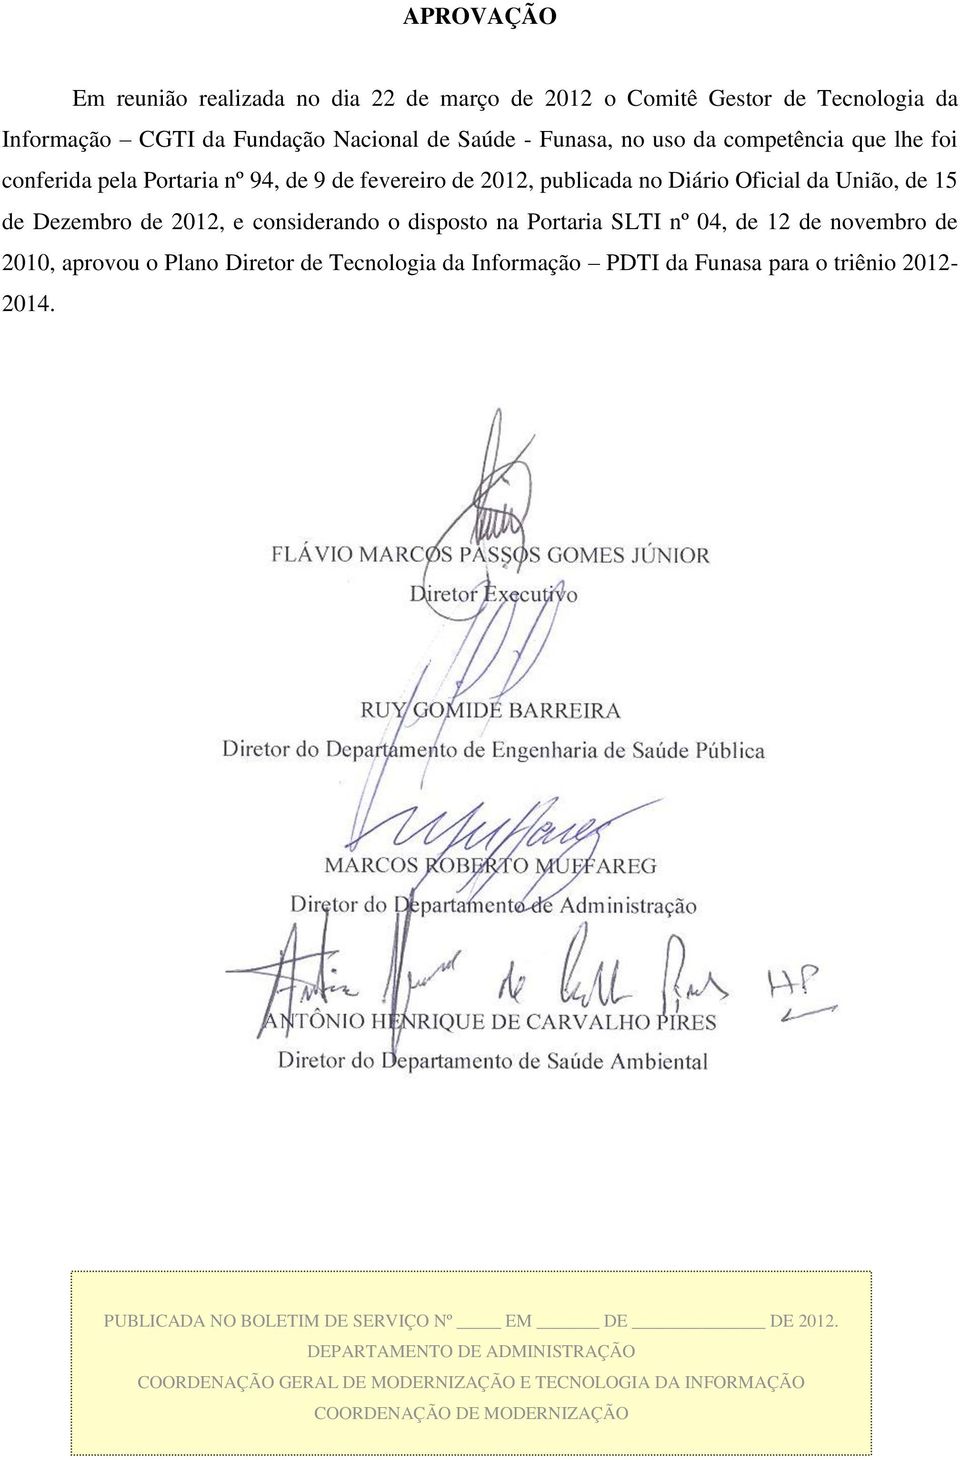 considerando o disposto na Portaria SLTI nº 04, de 12 de novembro de 2010, aprovou o Plano Diretor de Tecnologia da Informação PDTI da Funasa para o triênio